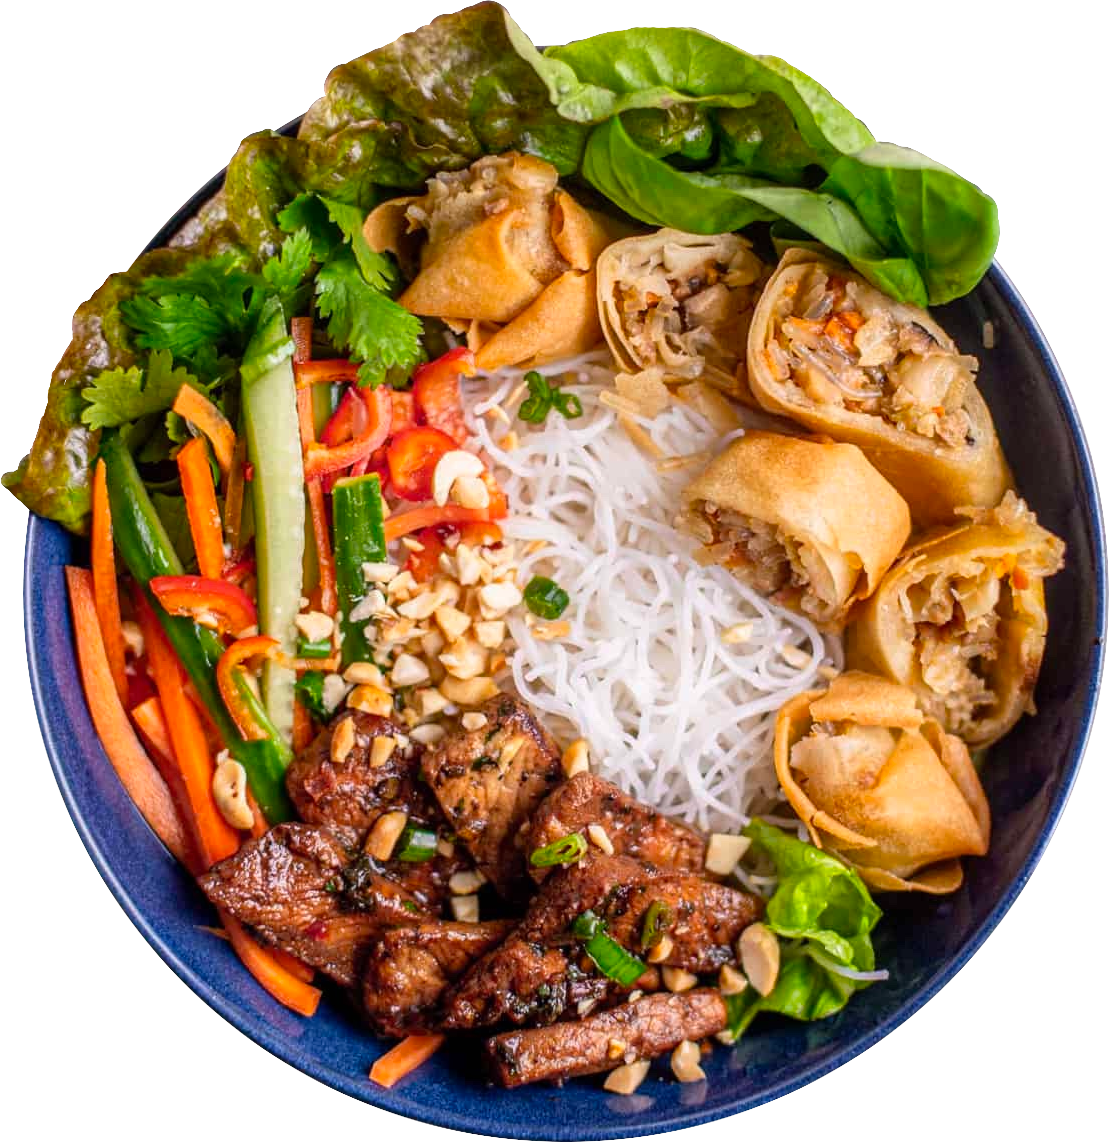 Vietnamese Restaurant Menu - Delicious Lunch & Dinner